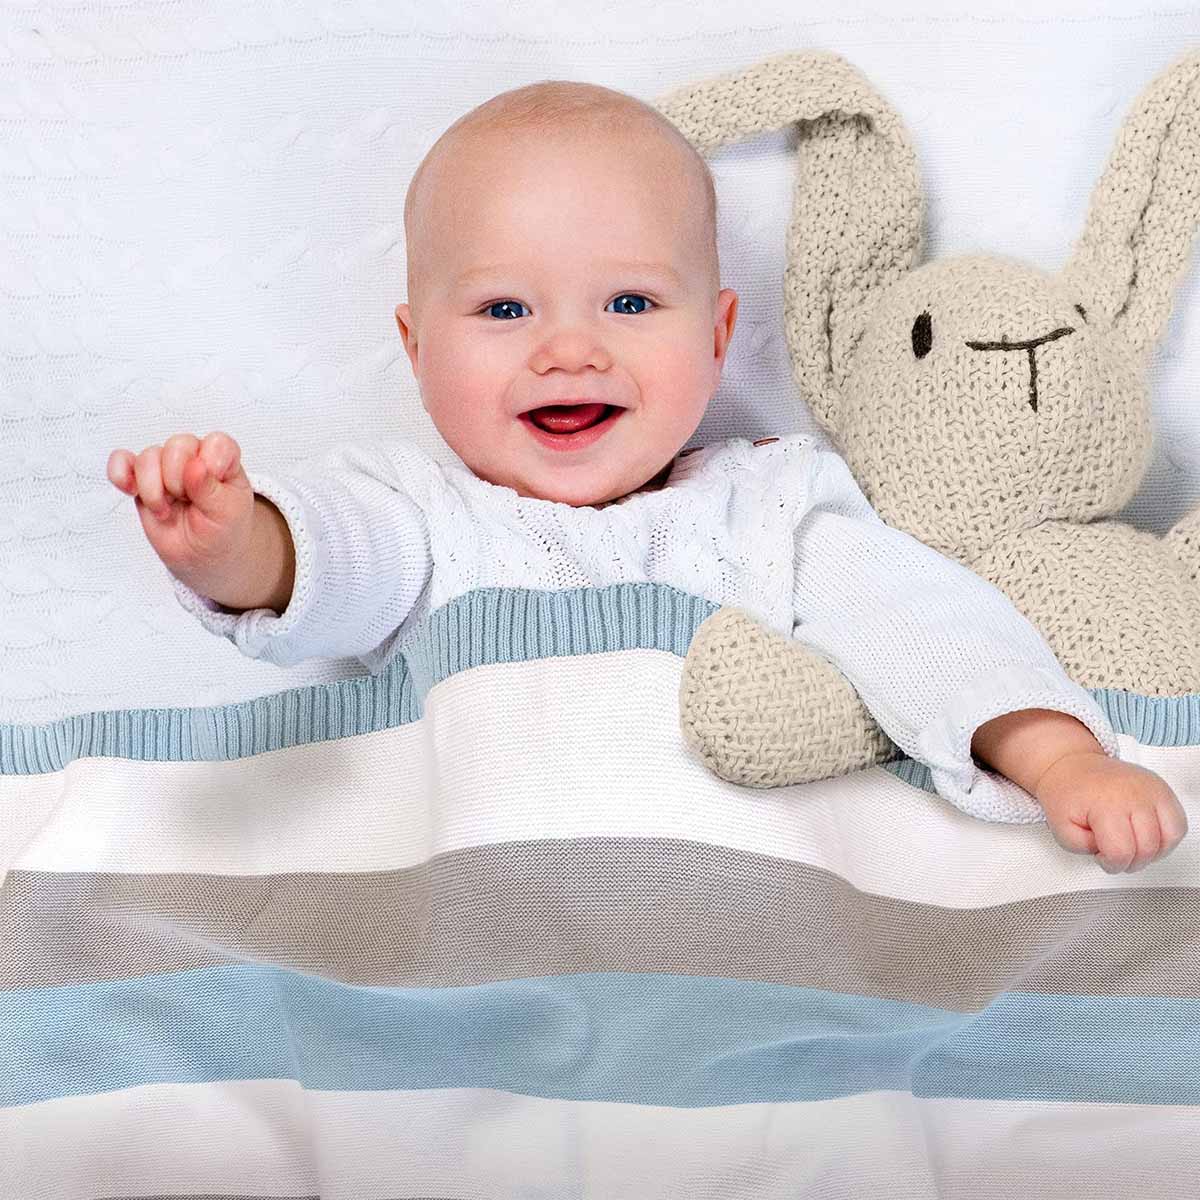 Glückliches Baby liegt im Bett, eingedeckt in blau-grau-weiß gestreifter Bio-Baumwolldecke. Es lächelt und winkt in die Kamera.